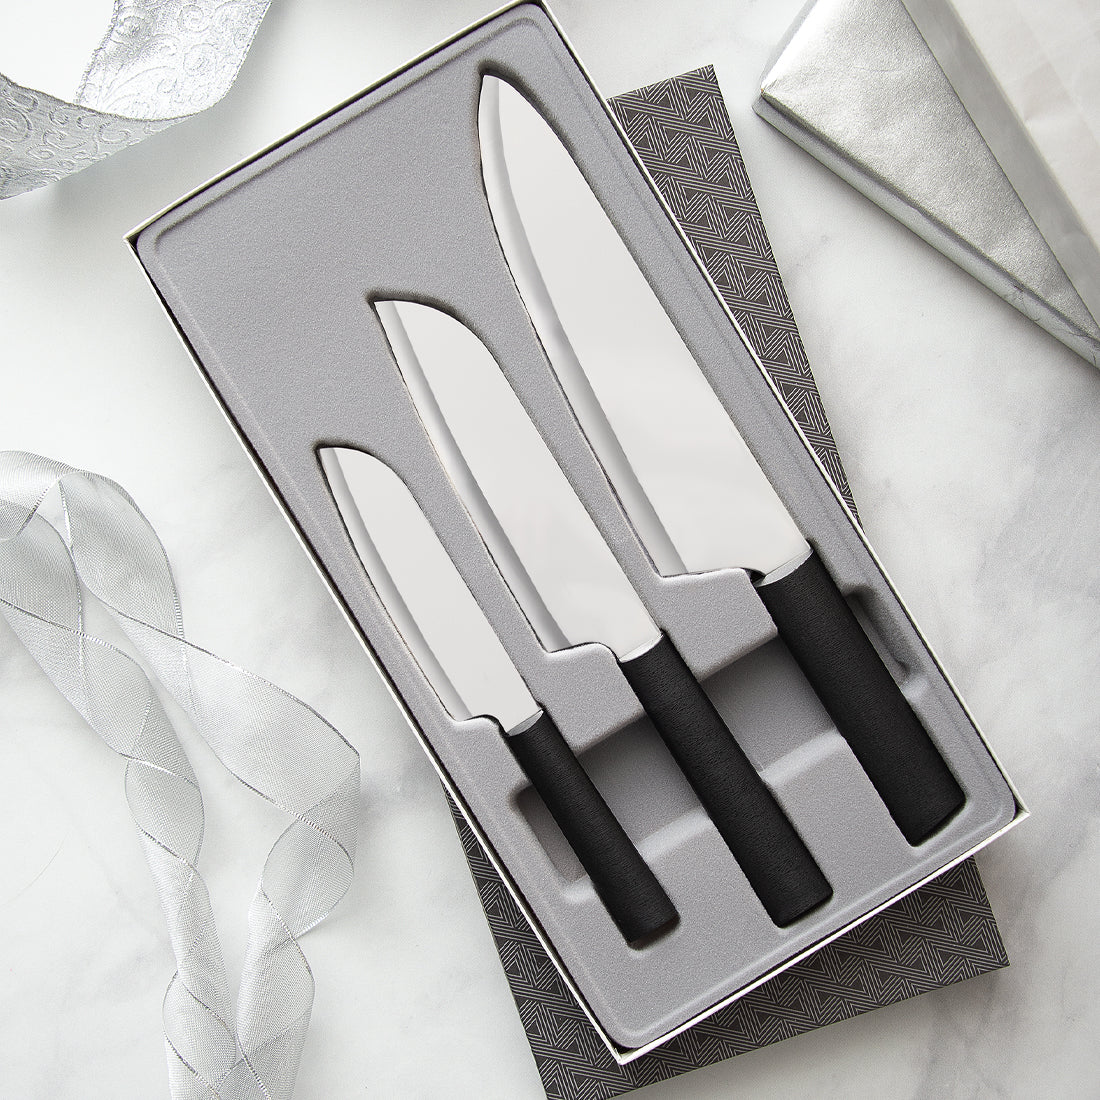 Carver/Boner Knife  Large Meat Carving Knife - Rada Cutlery